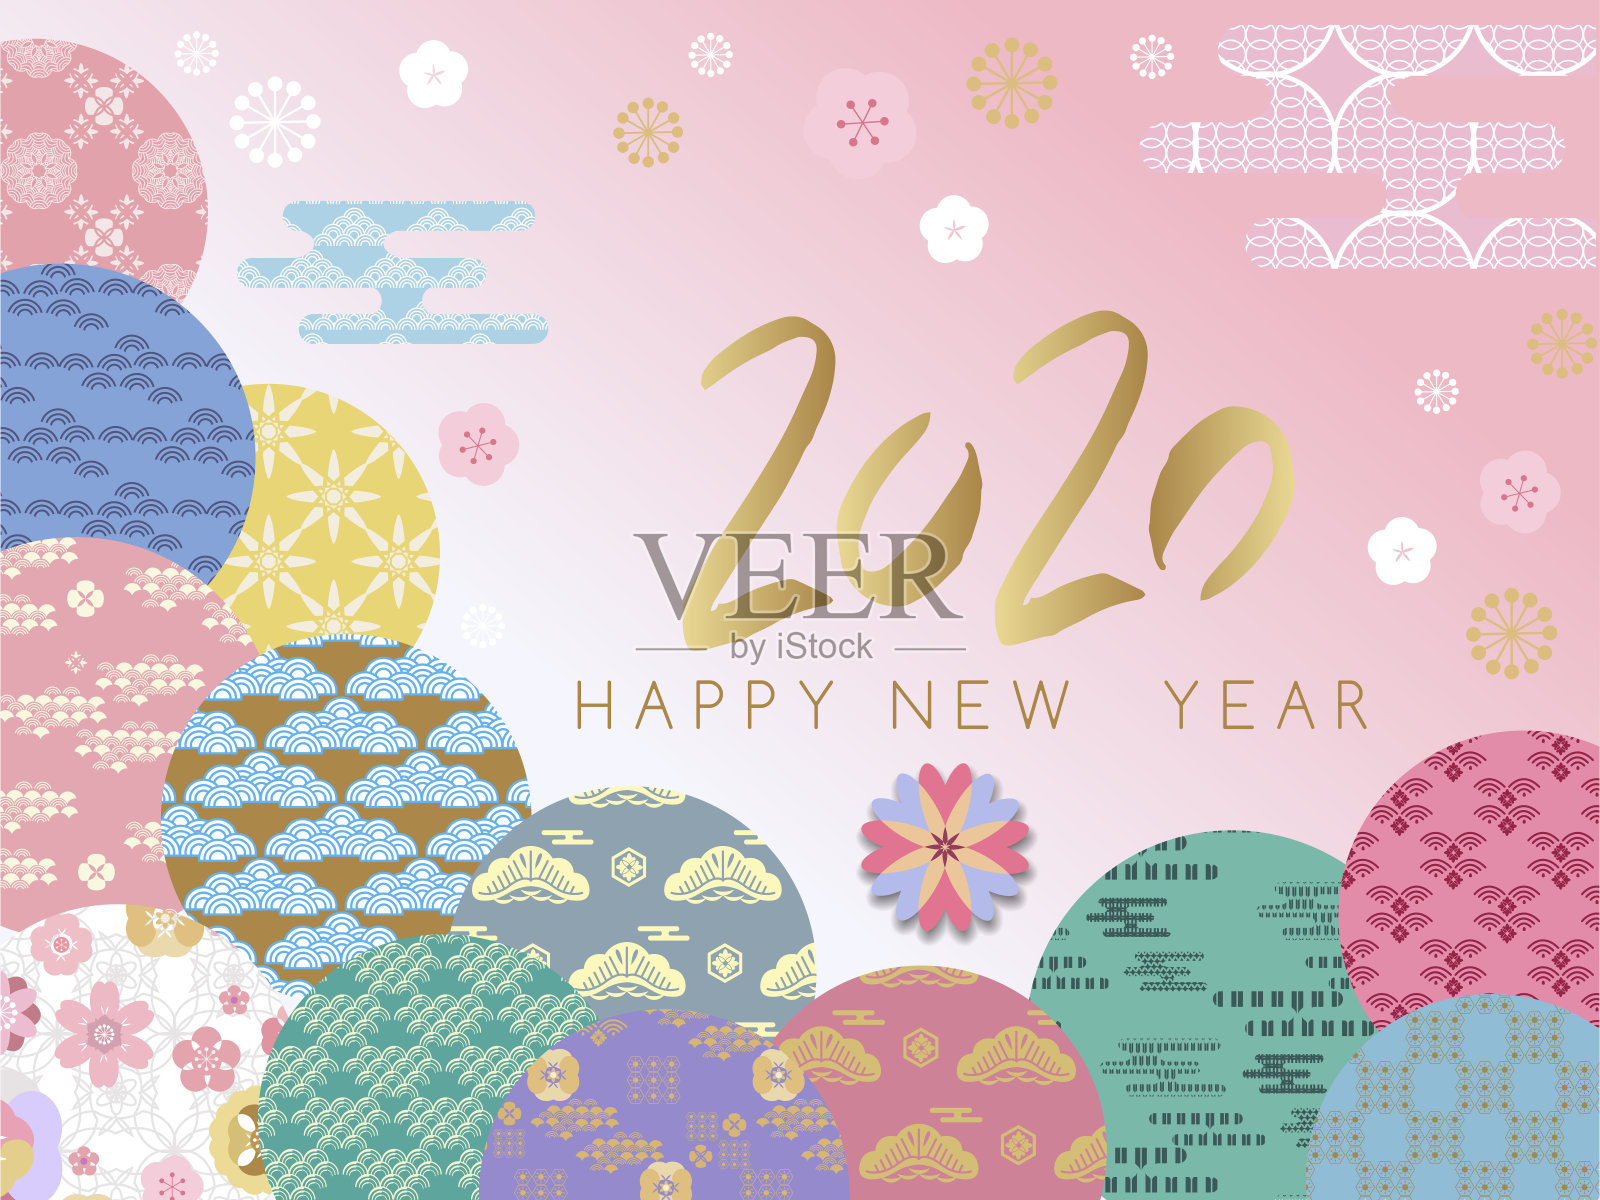 祝中国2020年鼠年新年快乐。设计模板素材